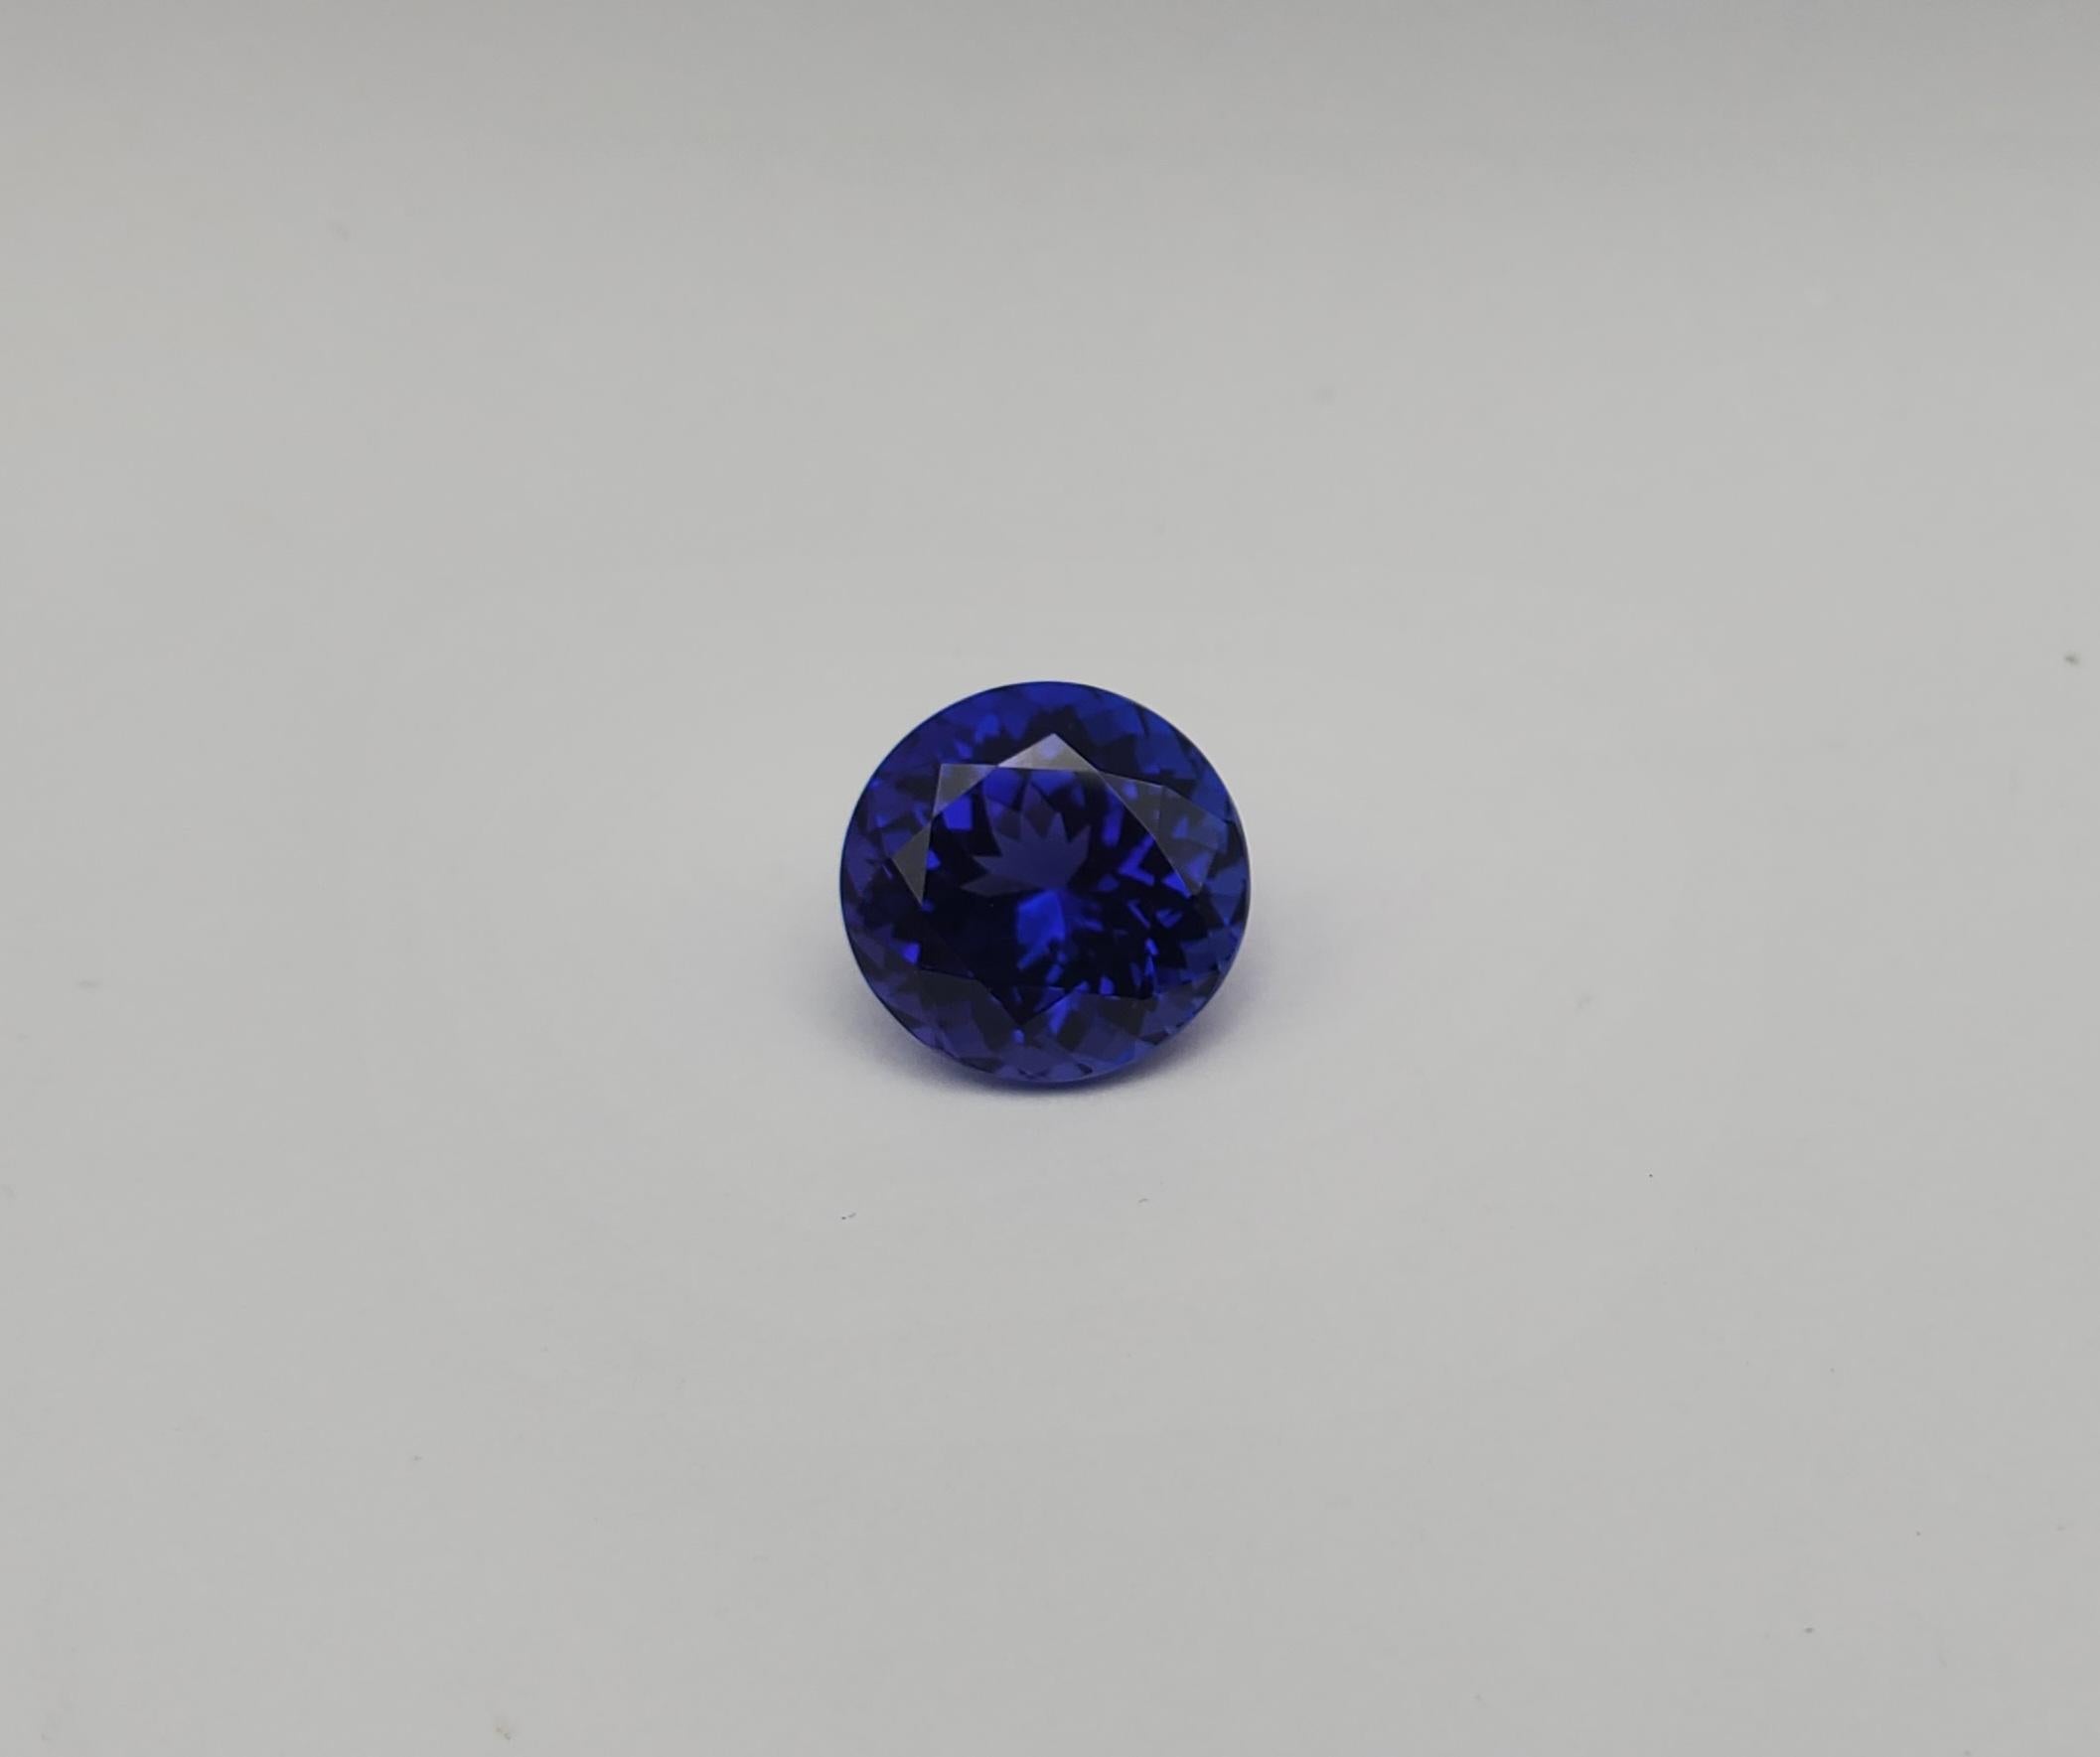 Voici un exemple époustouflant de l'attrait de la tanzanite : une beauté transparente de 5,17ct de forme ronde avec une nuance bleu-violet exquise qui attirera sans aucun doute l'attention de tout connaisseur de pierres précieuses ou de tout amateur